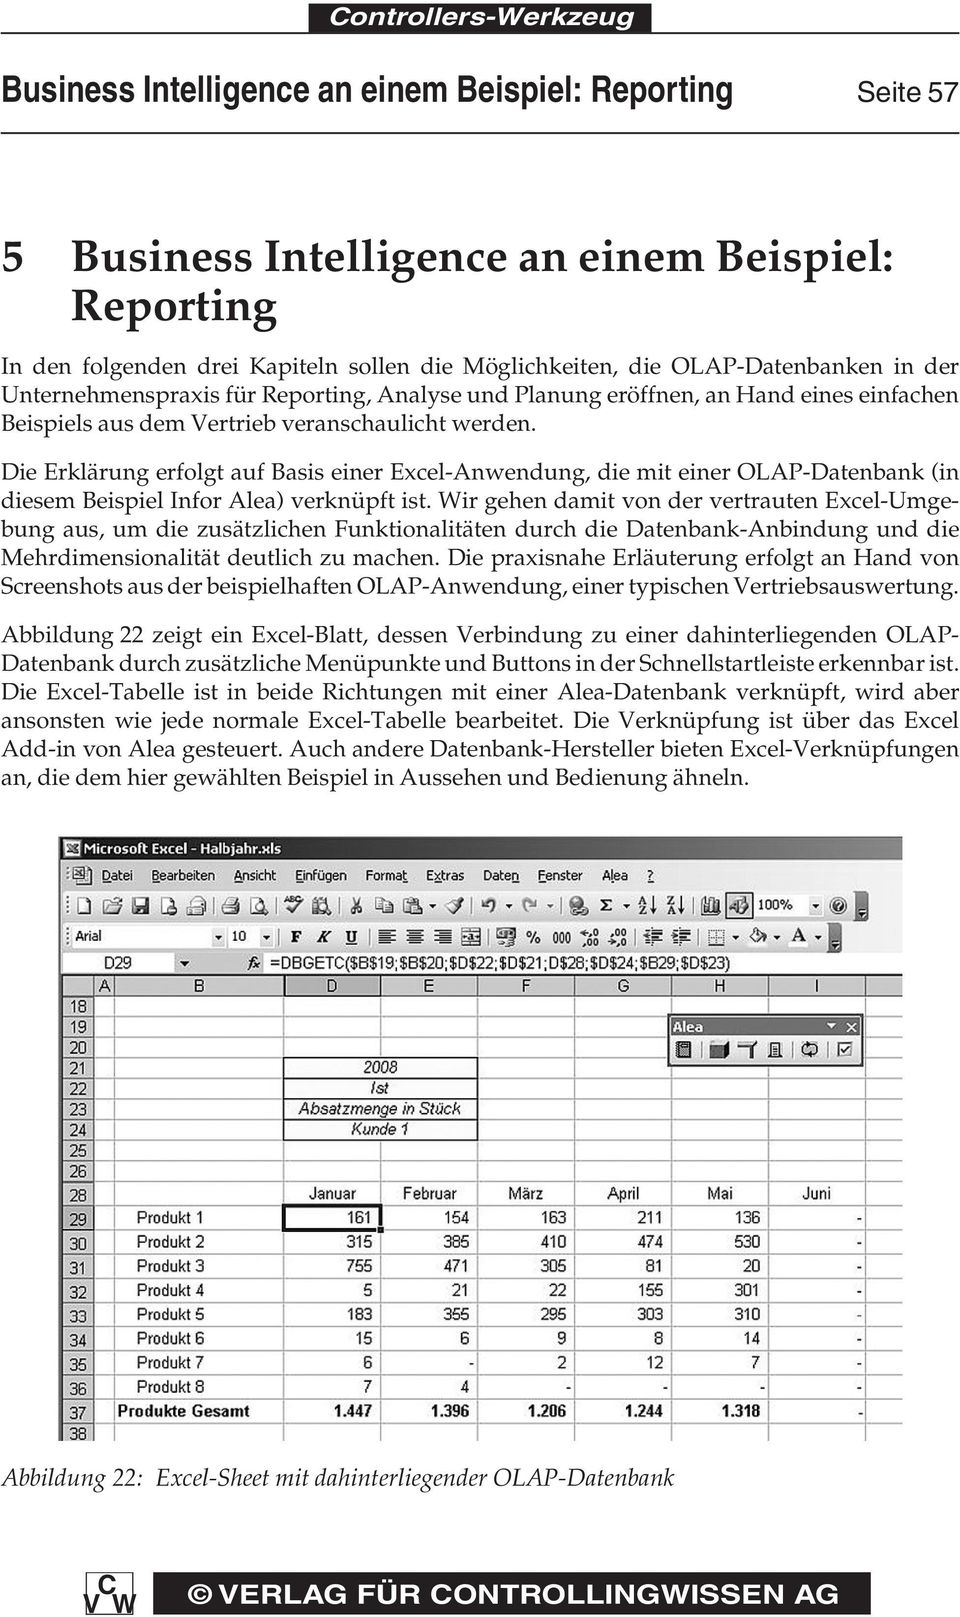 Die Erklärung erfolgt auf Basis einer Excel-Anwendung, die mit einer OLAP-Datenbank (in diesem Beispiel Infor Alea) verknüpft ist.